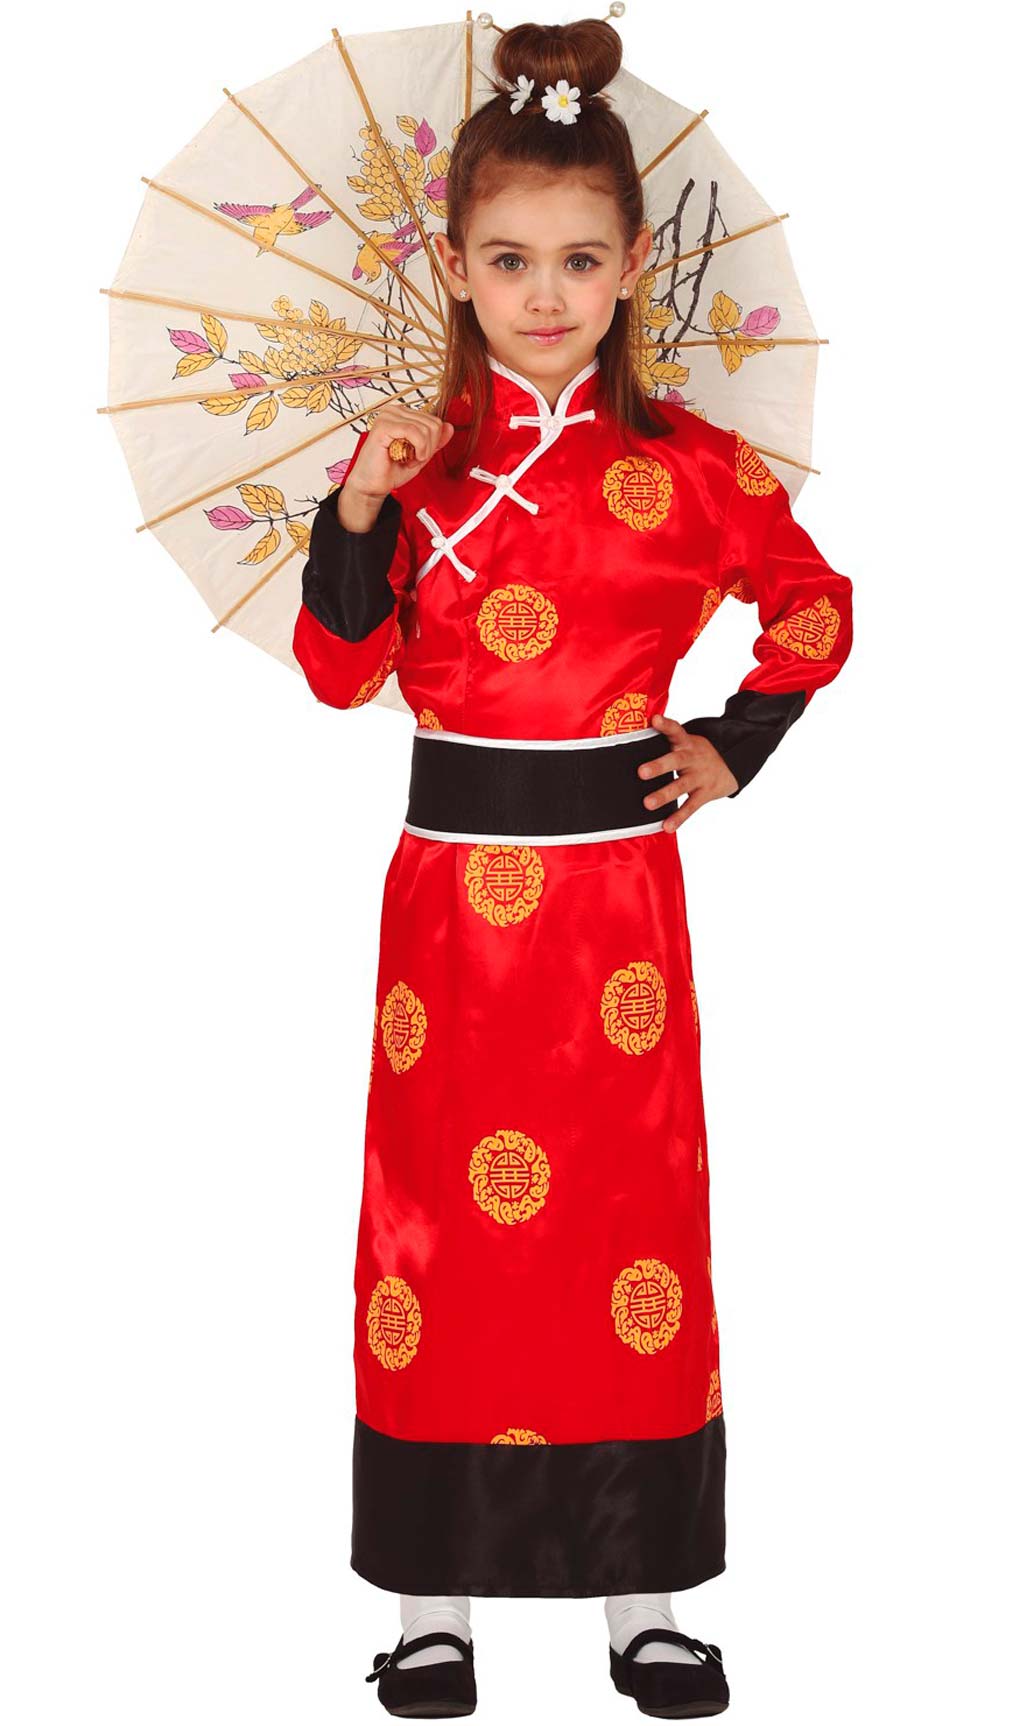 Costumi di gruppo da Cinesi Yuan